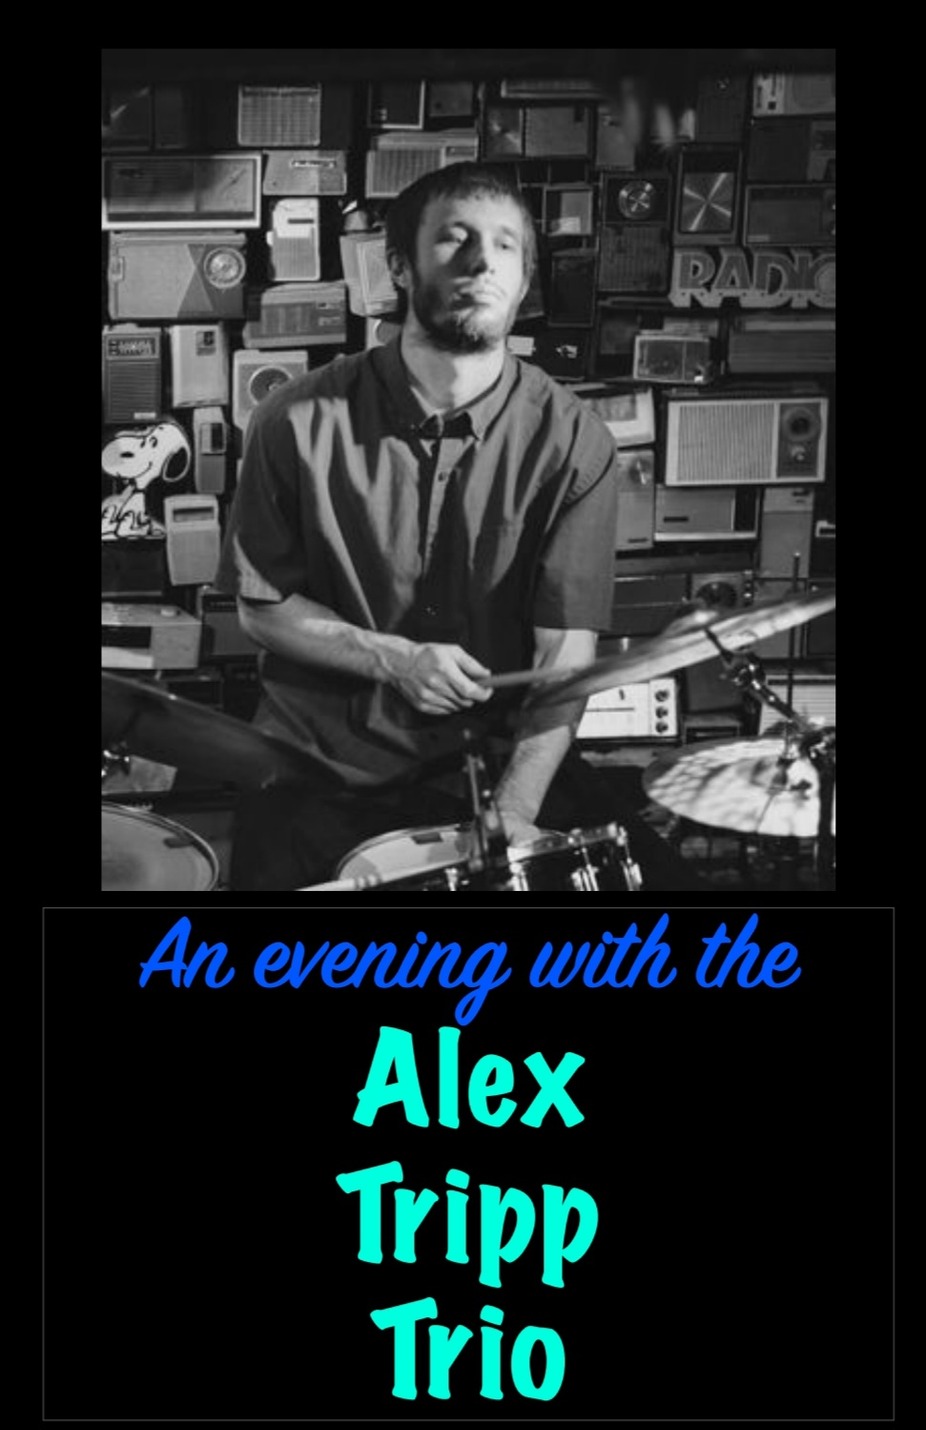 Alex Tripp Trio event photo